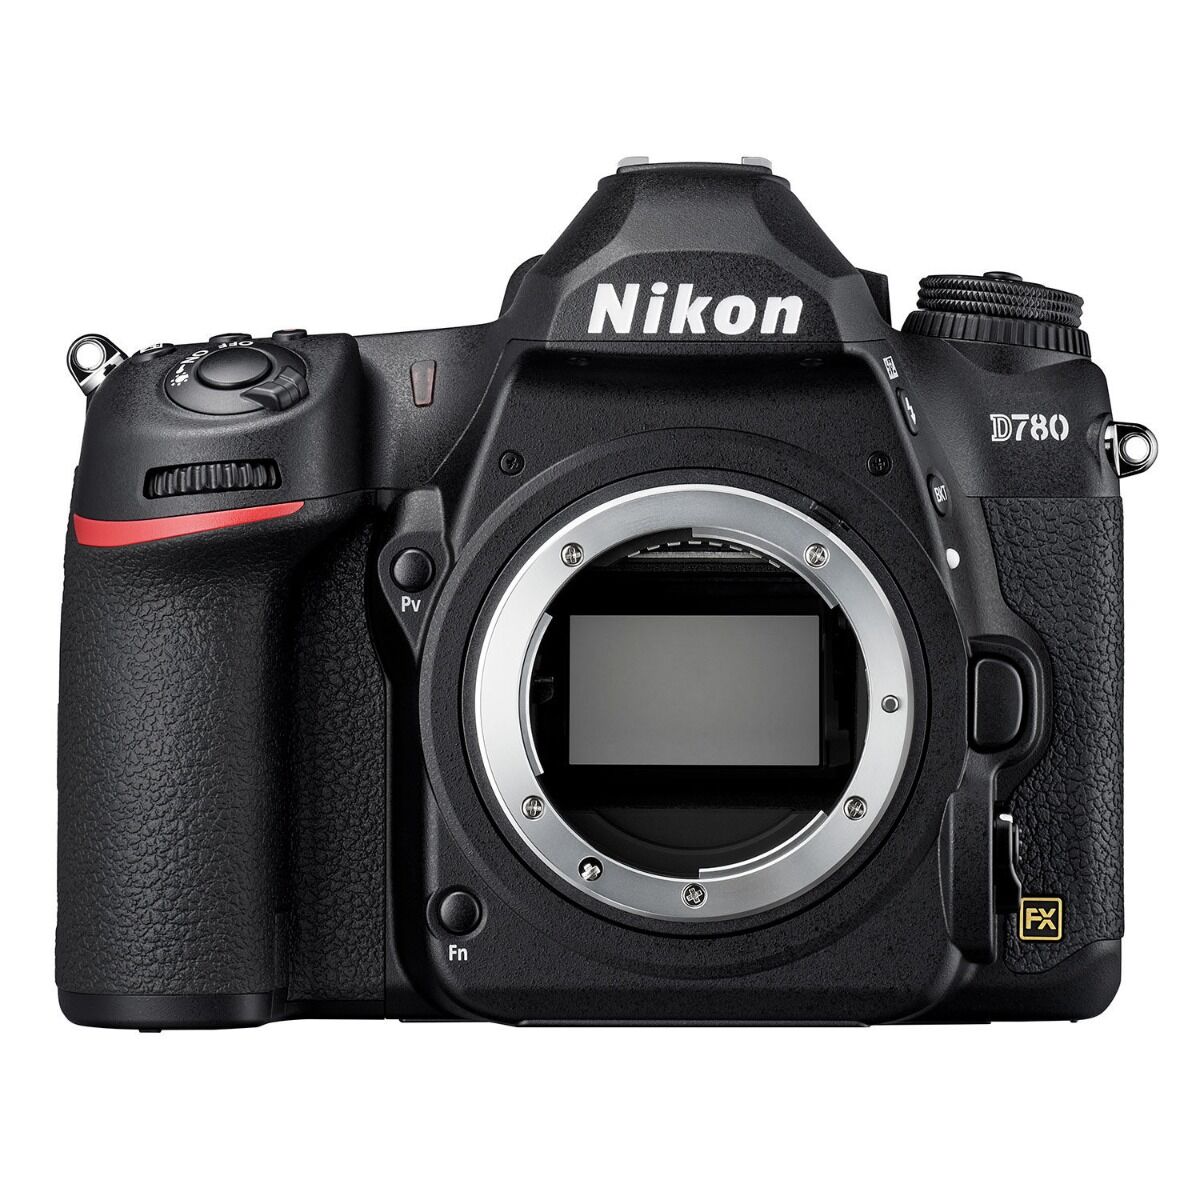 Nikon D780 DSLR Body- Garanzia Ufficiale Italia